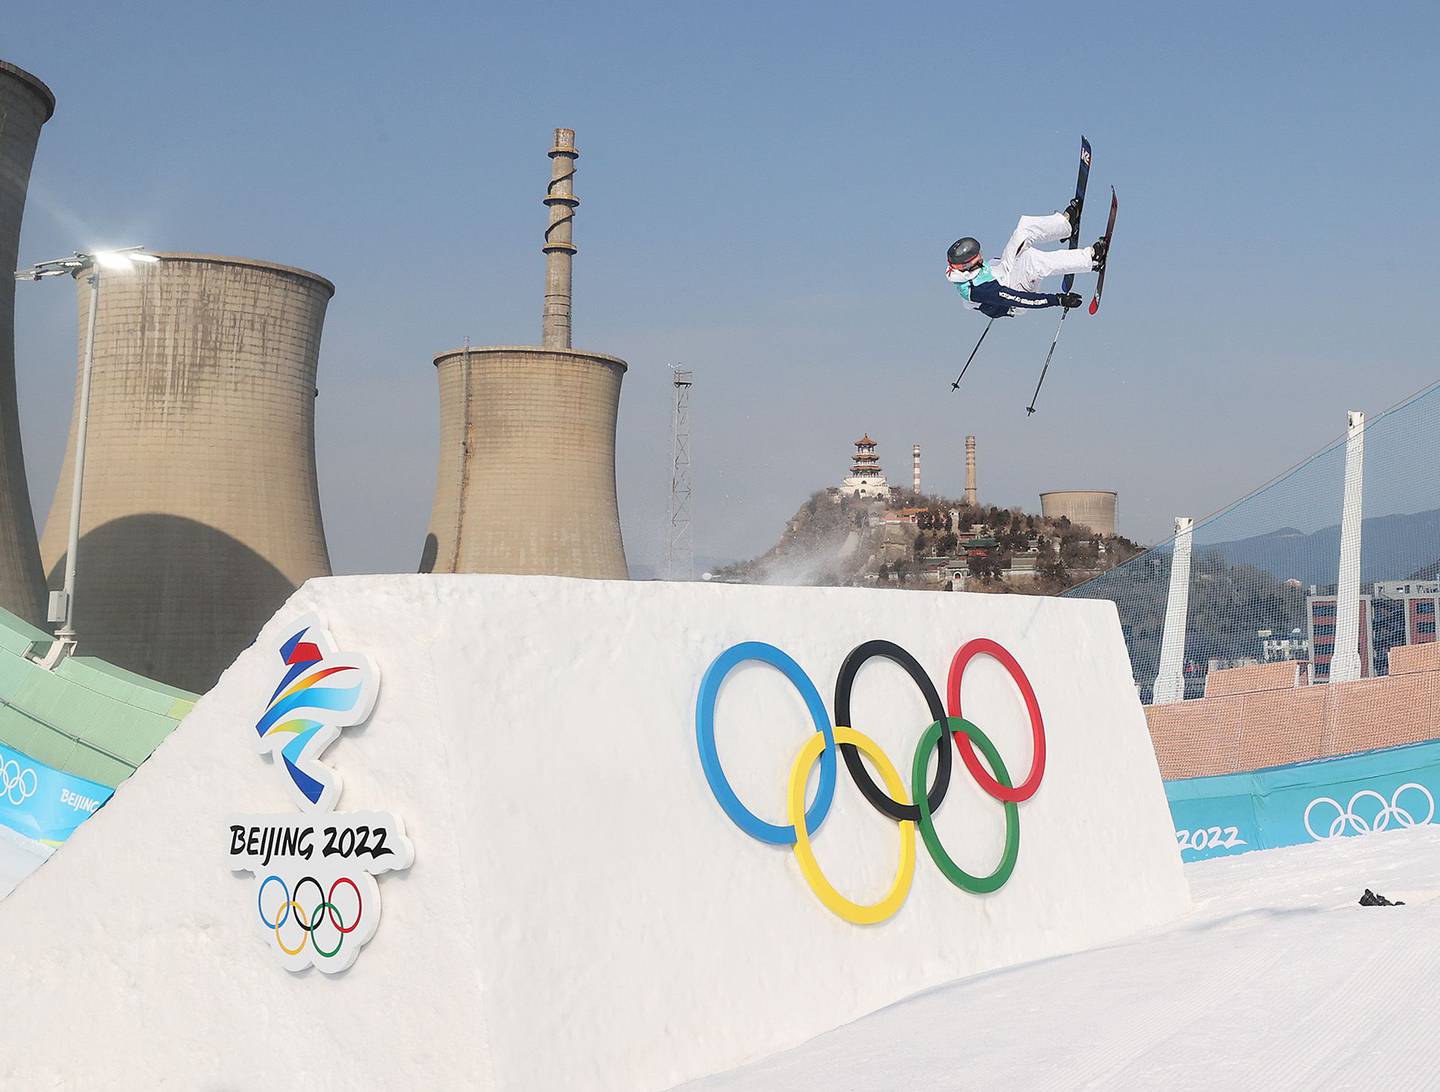 Colby Stevenson, de Estados Unidos, realiza un truco durante la final de Big Air de esquí de estilo libre masculino en el quinto día de los Juegos Olímpicos de Invierno de Pekín 2022 en Big Air Shougang el 9 de febrero de 2022 en Pekín.